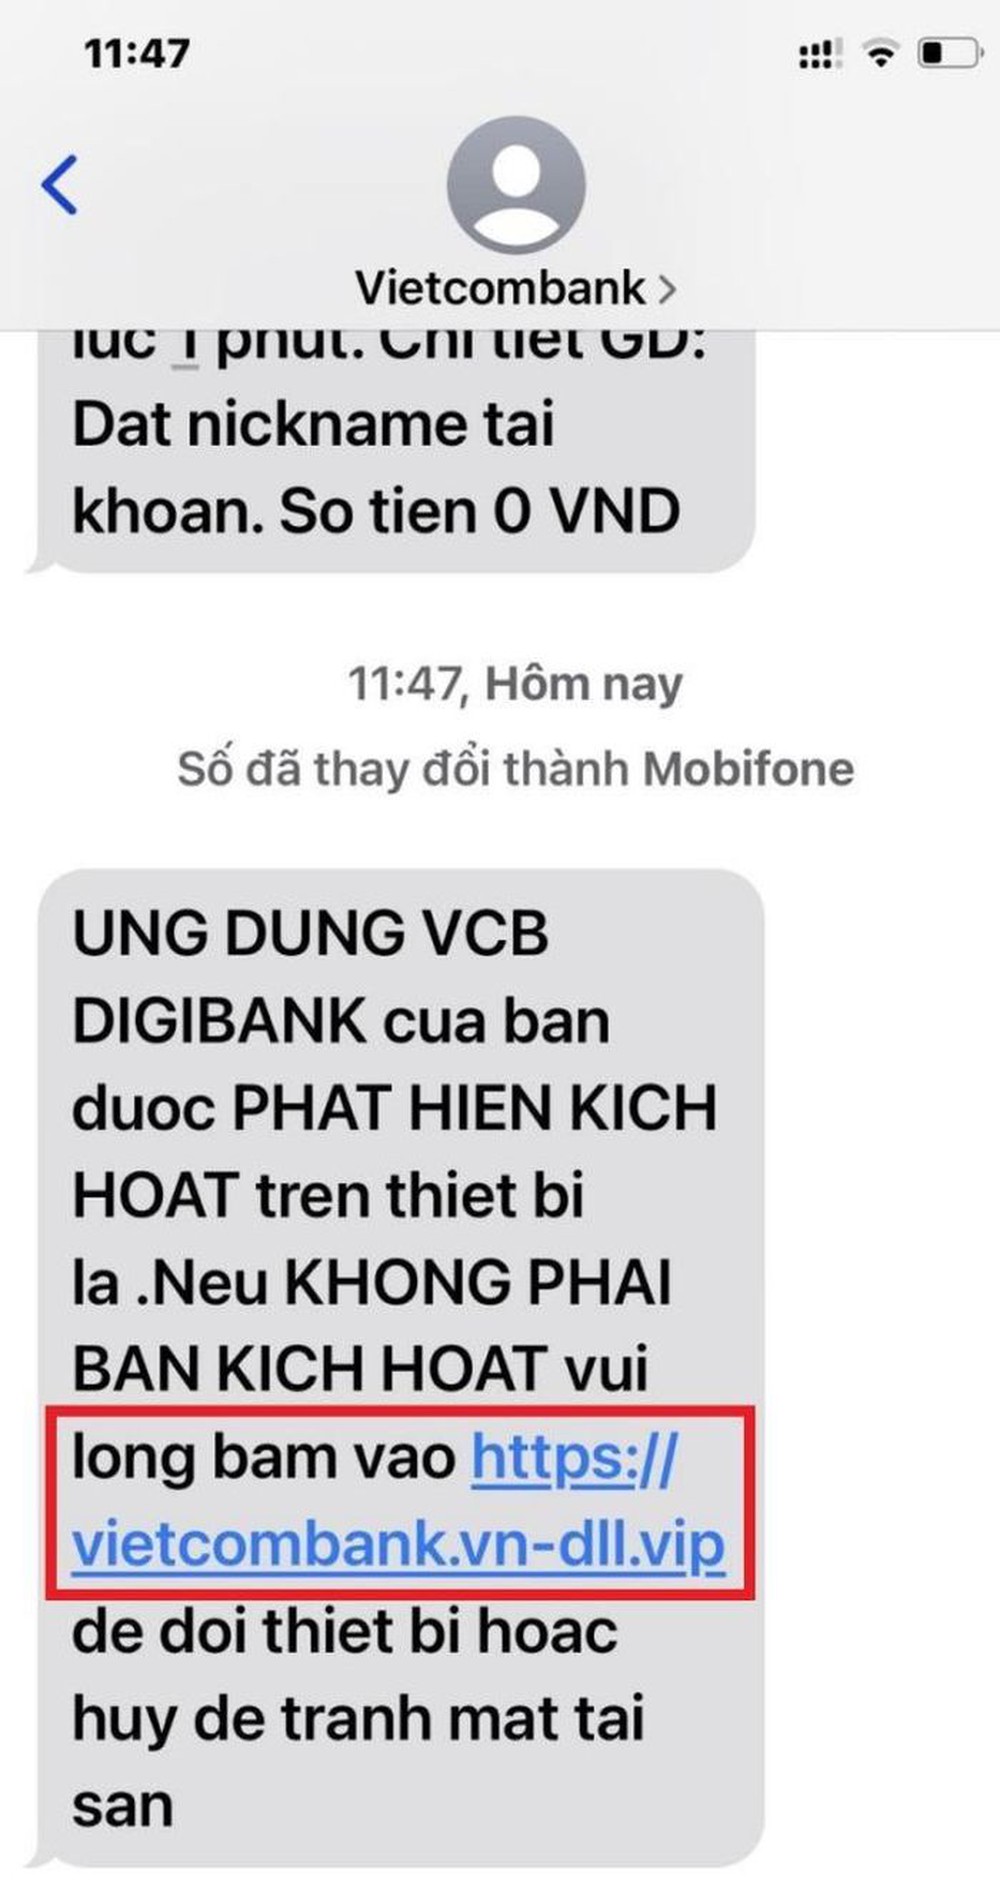 75% người dùng di động Việt Nam nhận được tin nhắn, cuộc gọi lừa đảo tài chính online - Ảnh 1.